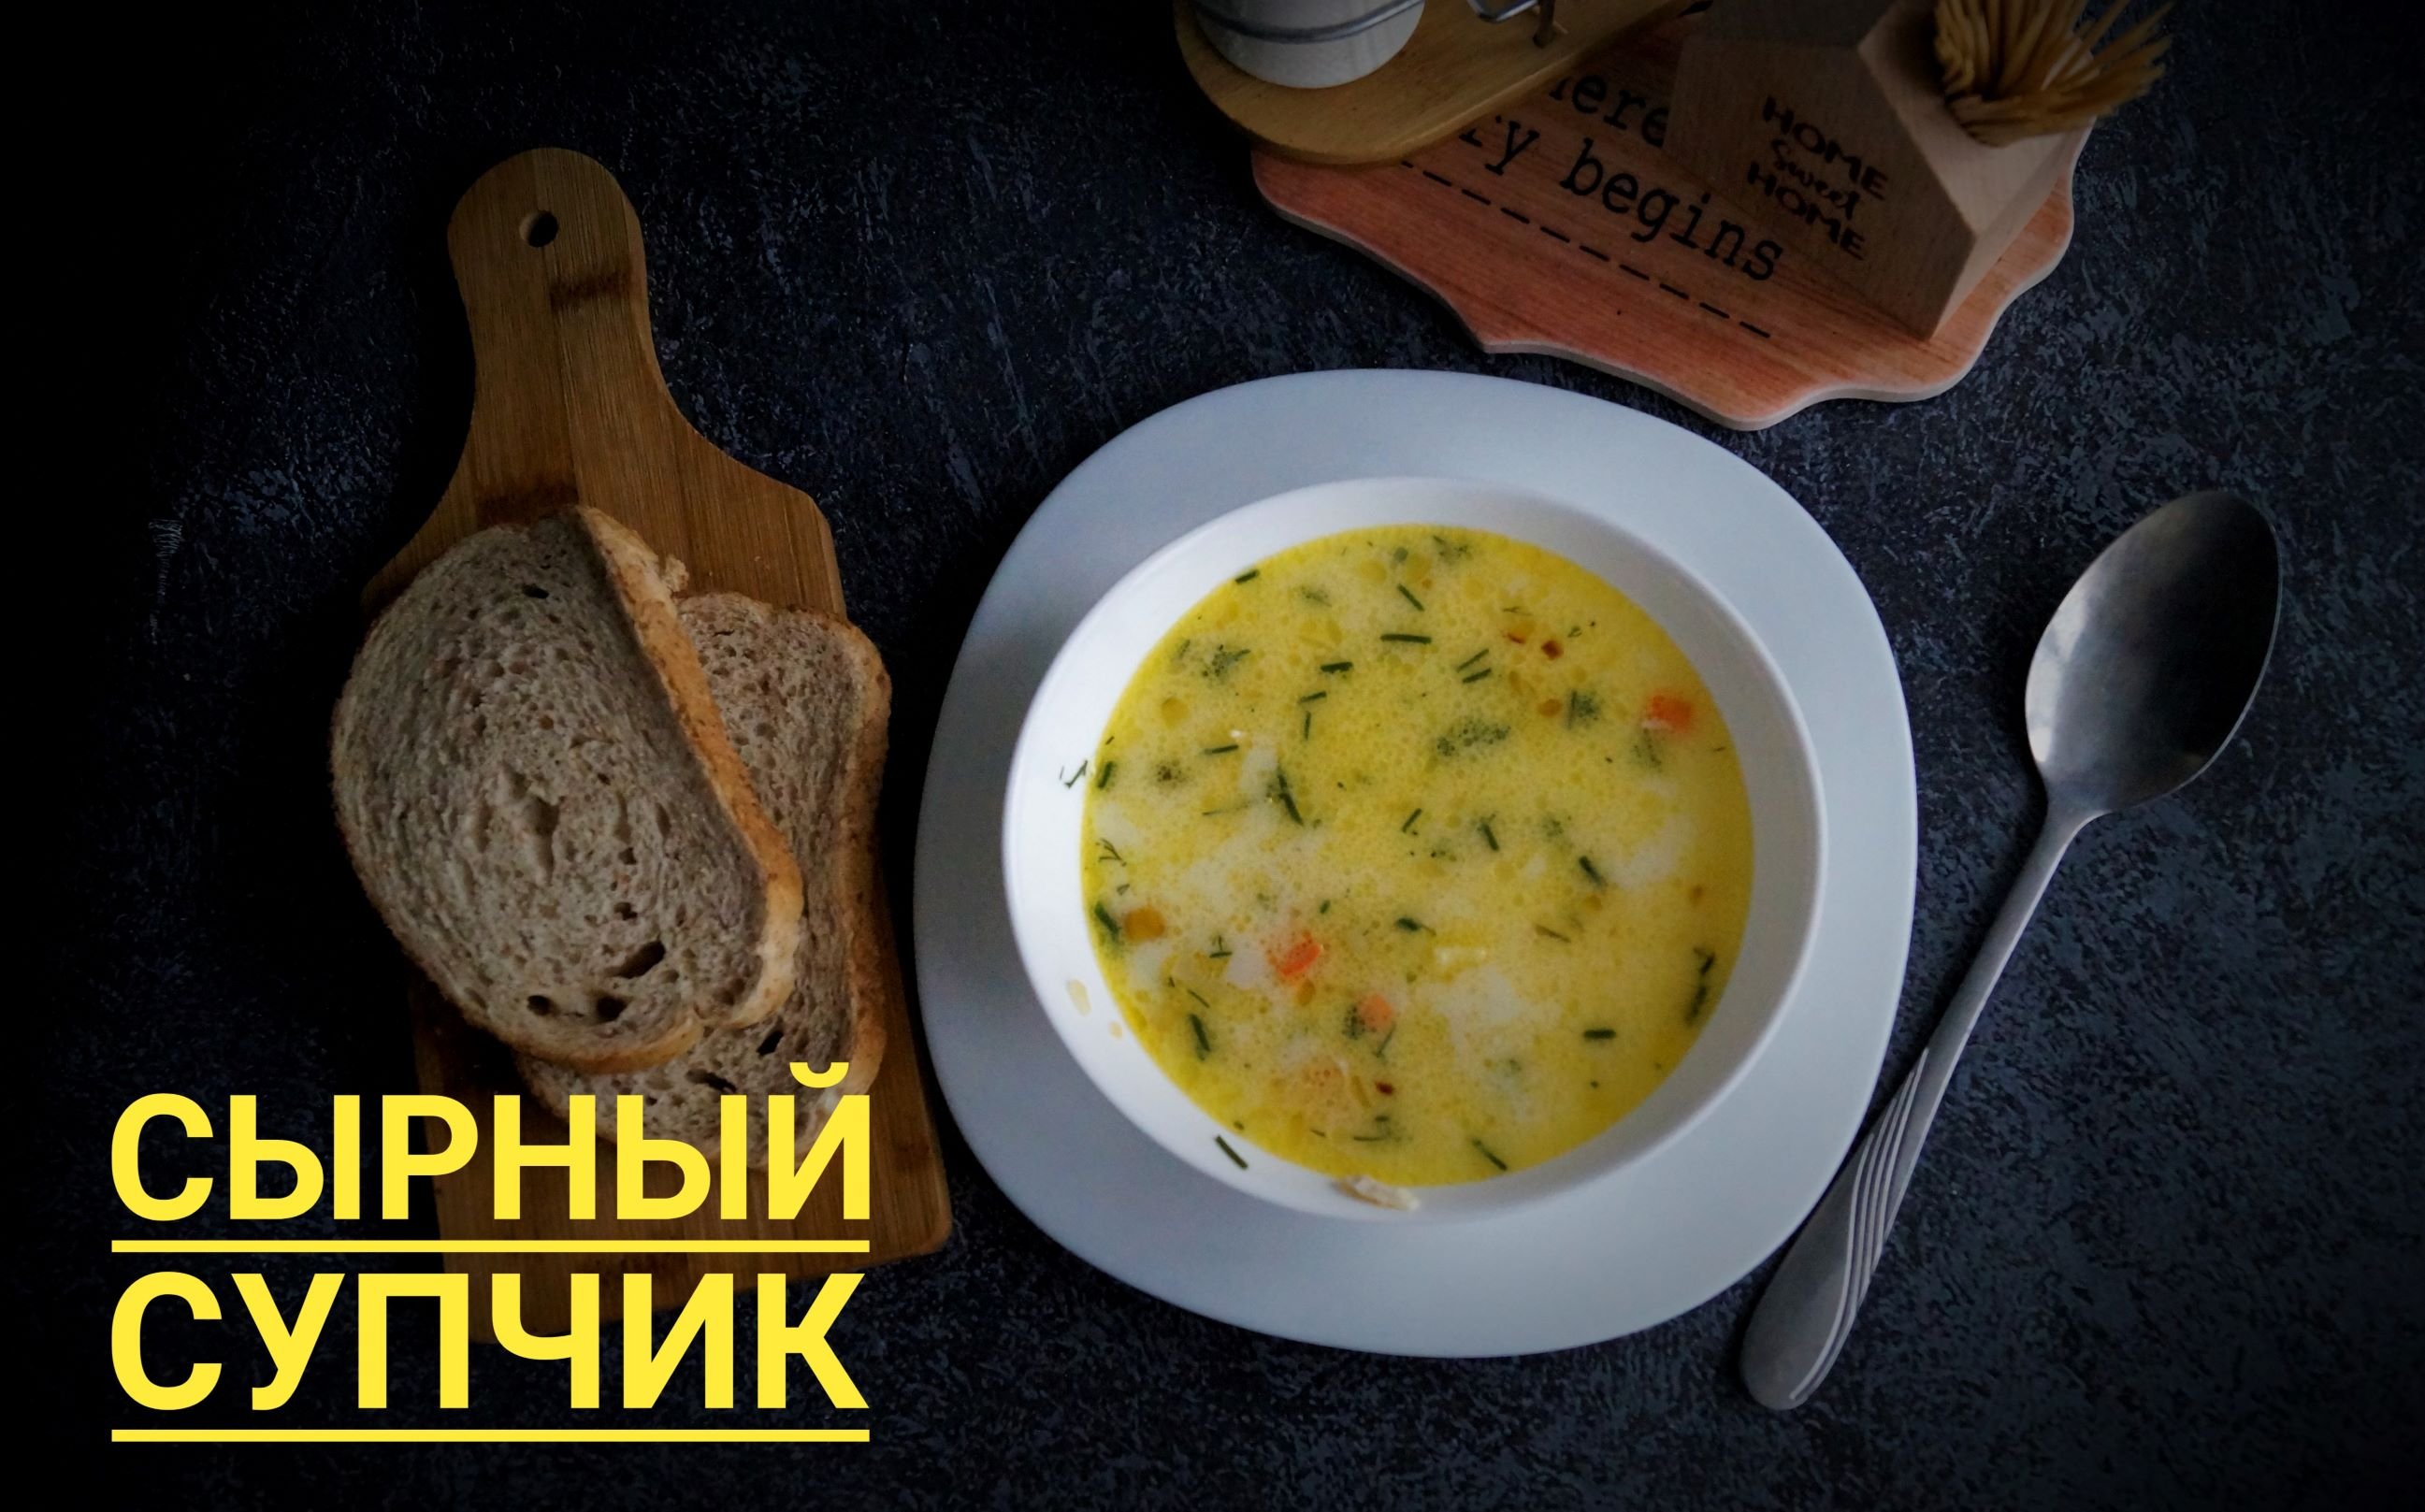 2017 году приготовили сырный суп. Сырный суп. Сырный супчик. Сырный суп с гренками. Сырный суп в пачке.